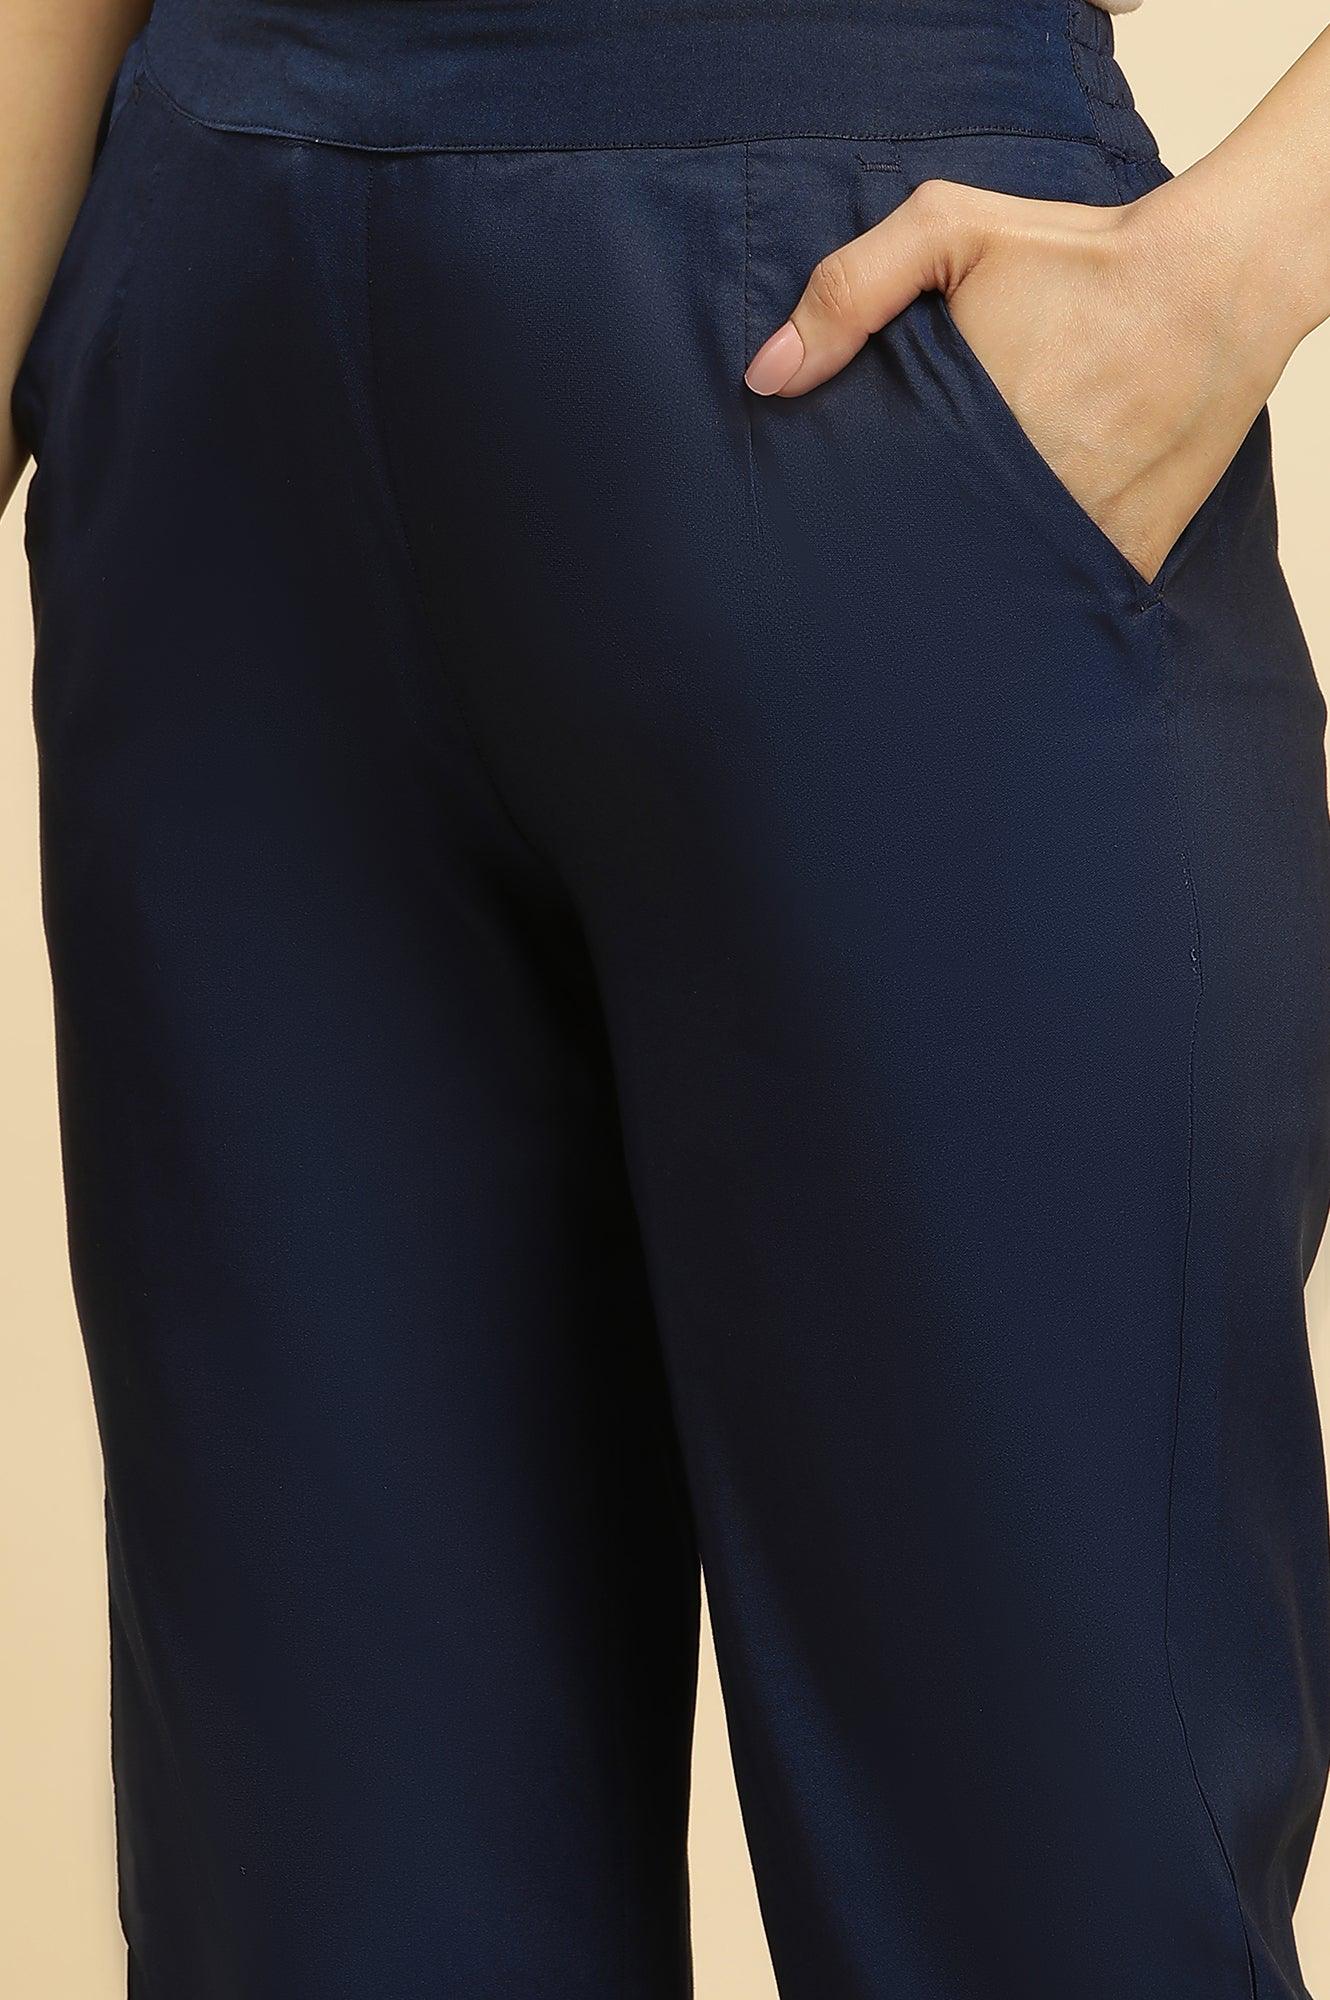 Blue Solid Pants With Metallic Sequin Hemline - wforwoman